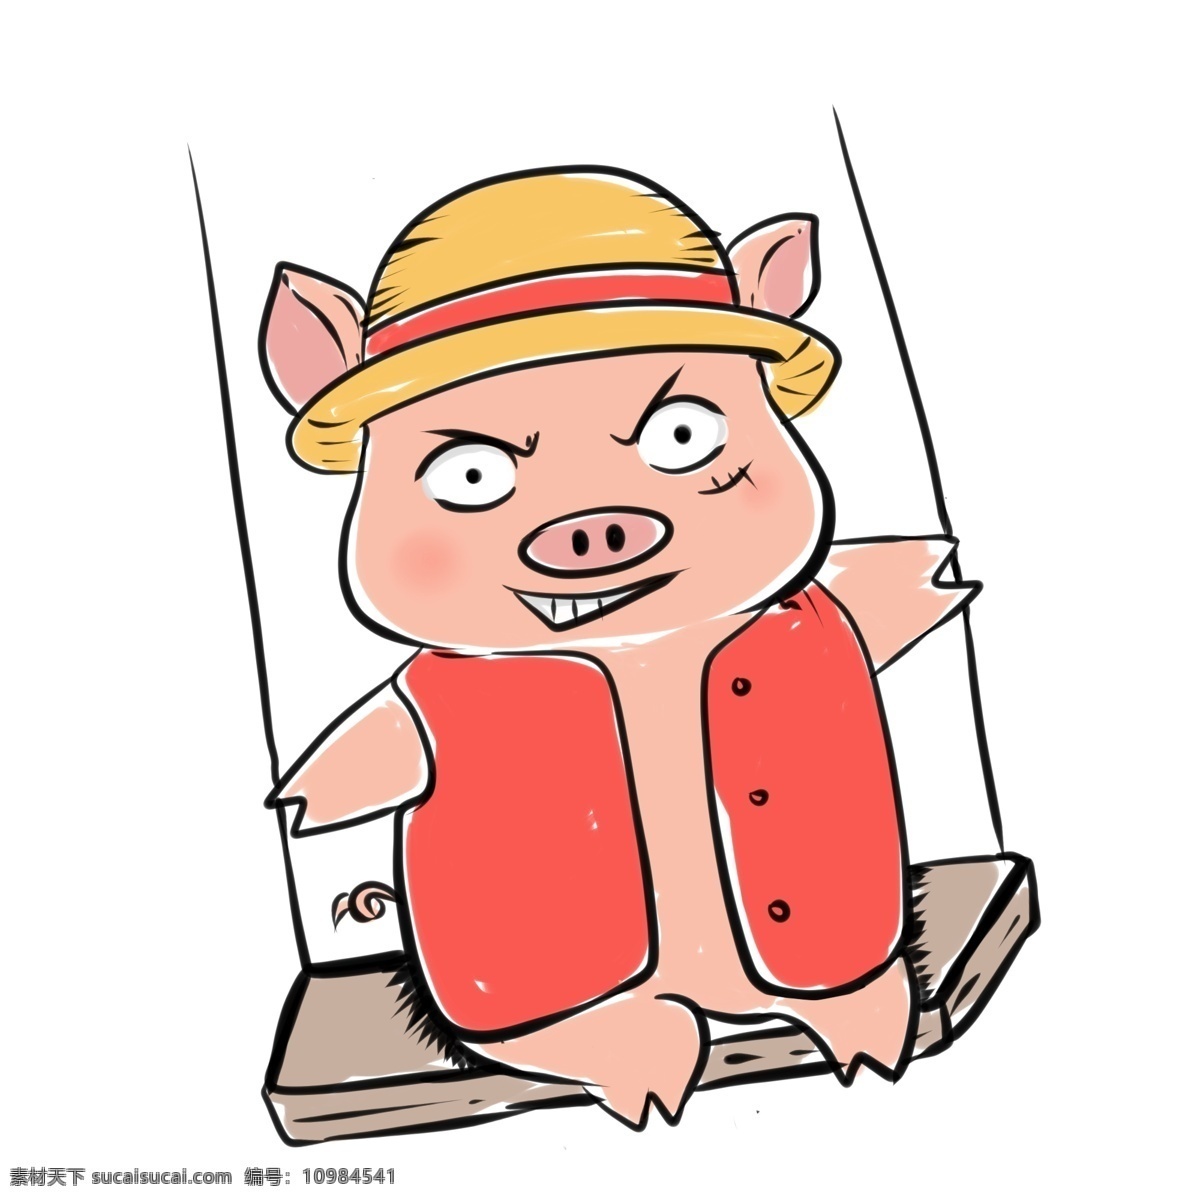 猪年百变小猪 猪年 小猪 粉红猪 草帽 红背心 嘿嘿笑 大耳朵 大眼睛 小蹄子 荡秋千 手绘 卡通